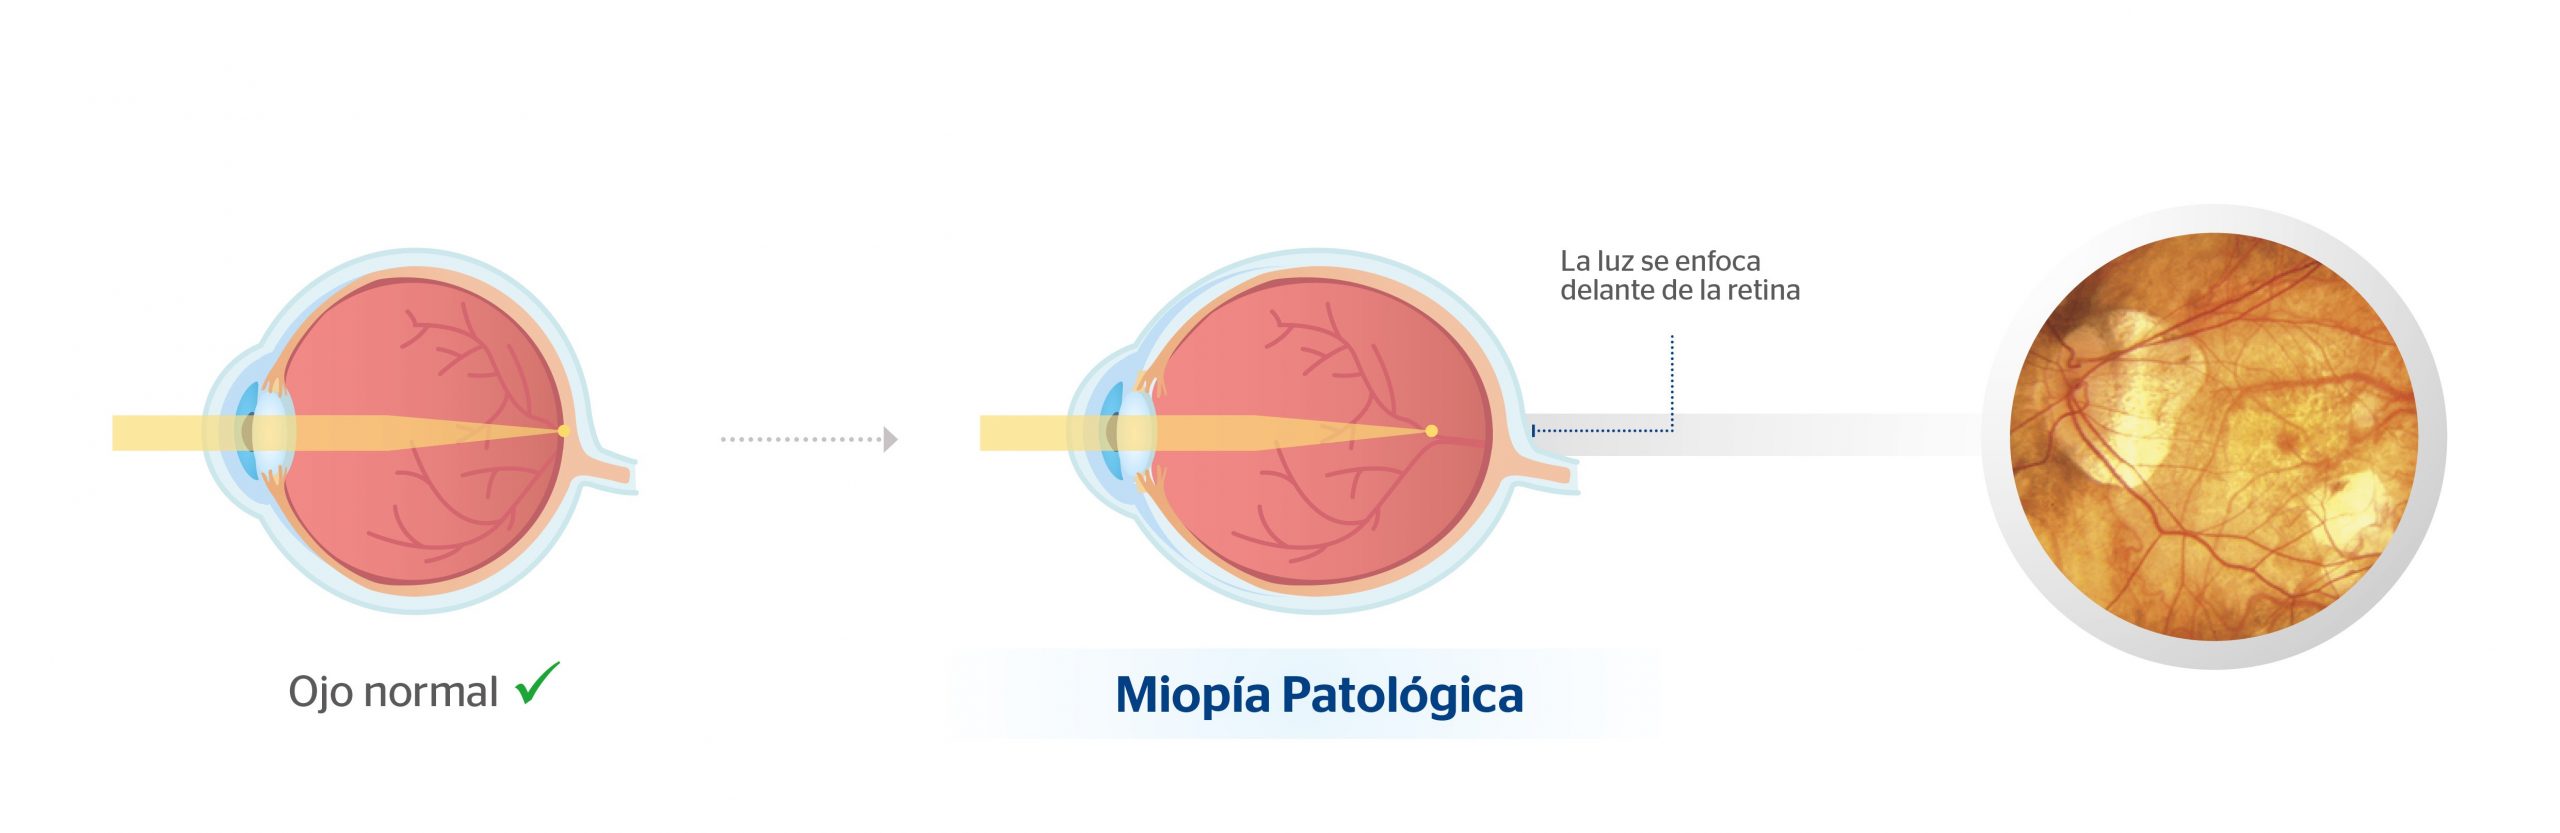 Ojo normal y ojo con miopía magna